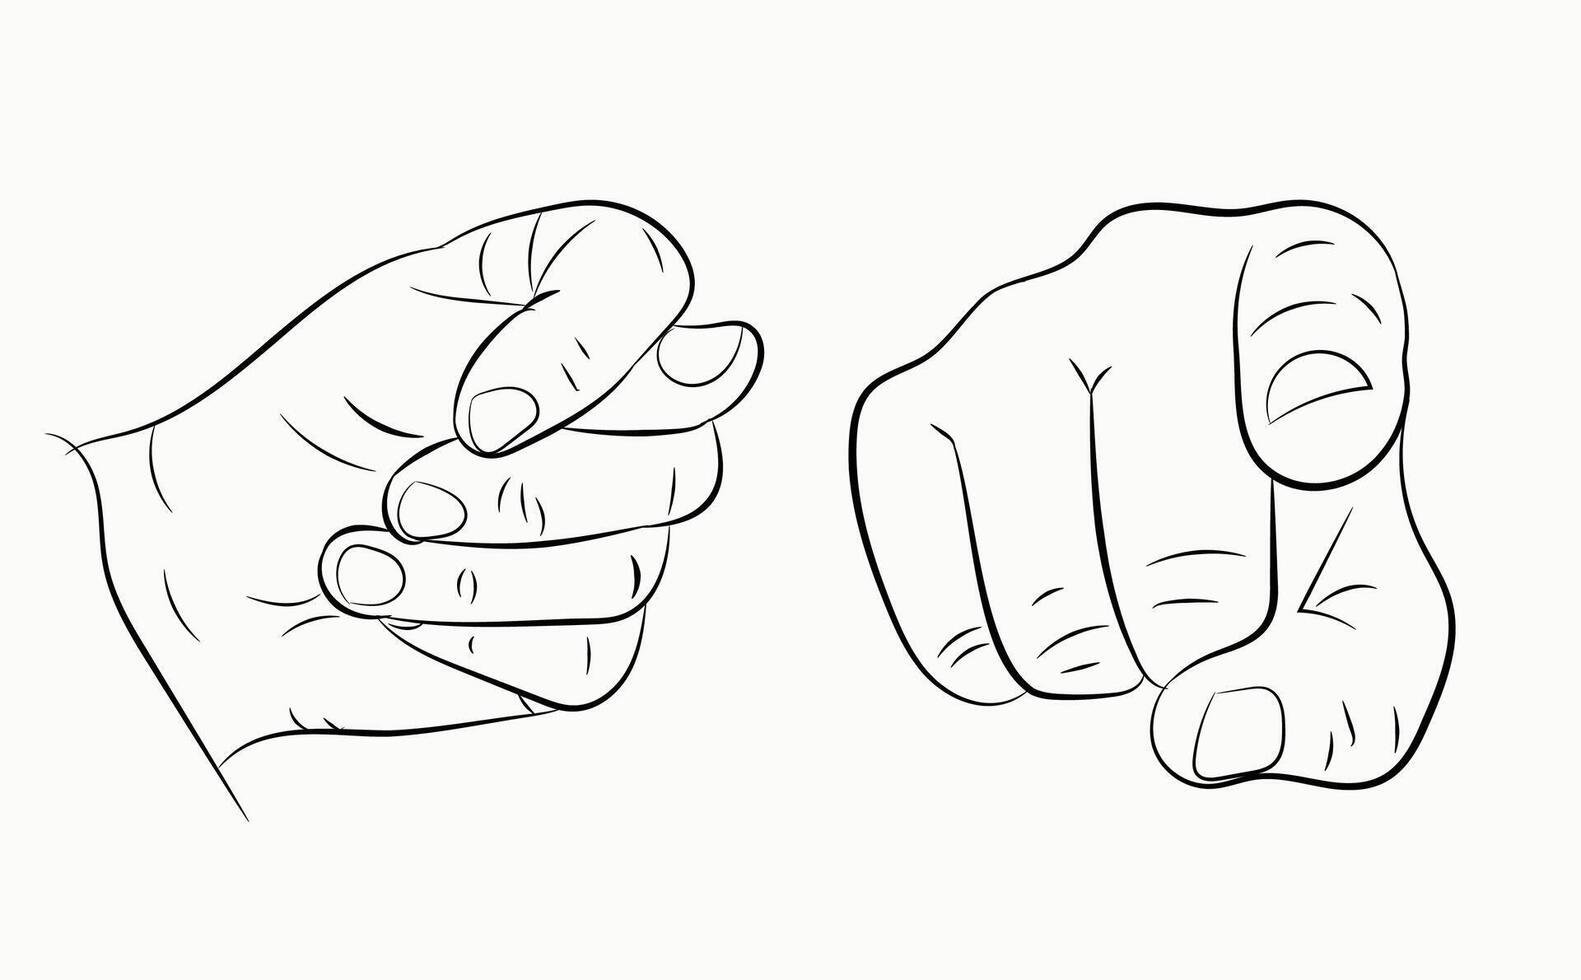 divers abstract handen, OK en duimen omhoog voor reeks van karakter ontwerp vector illustraties. reeks van handen in gebaren